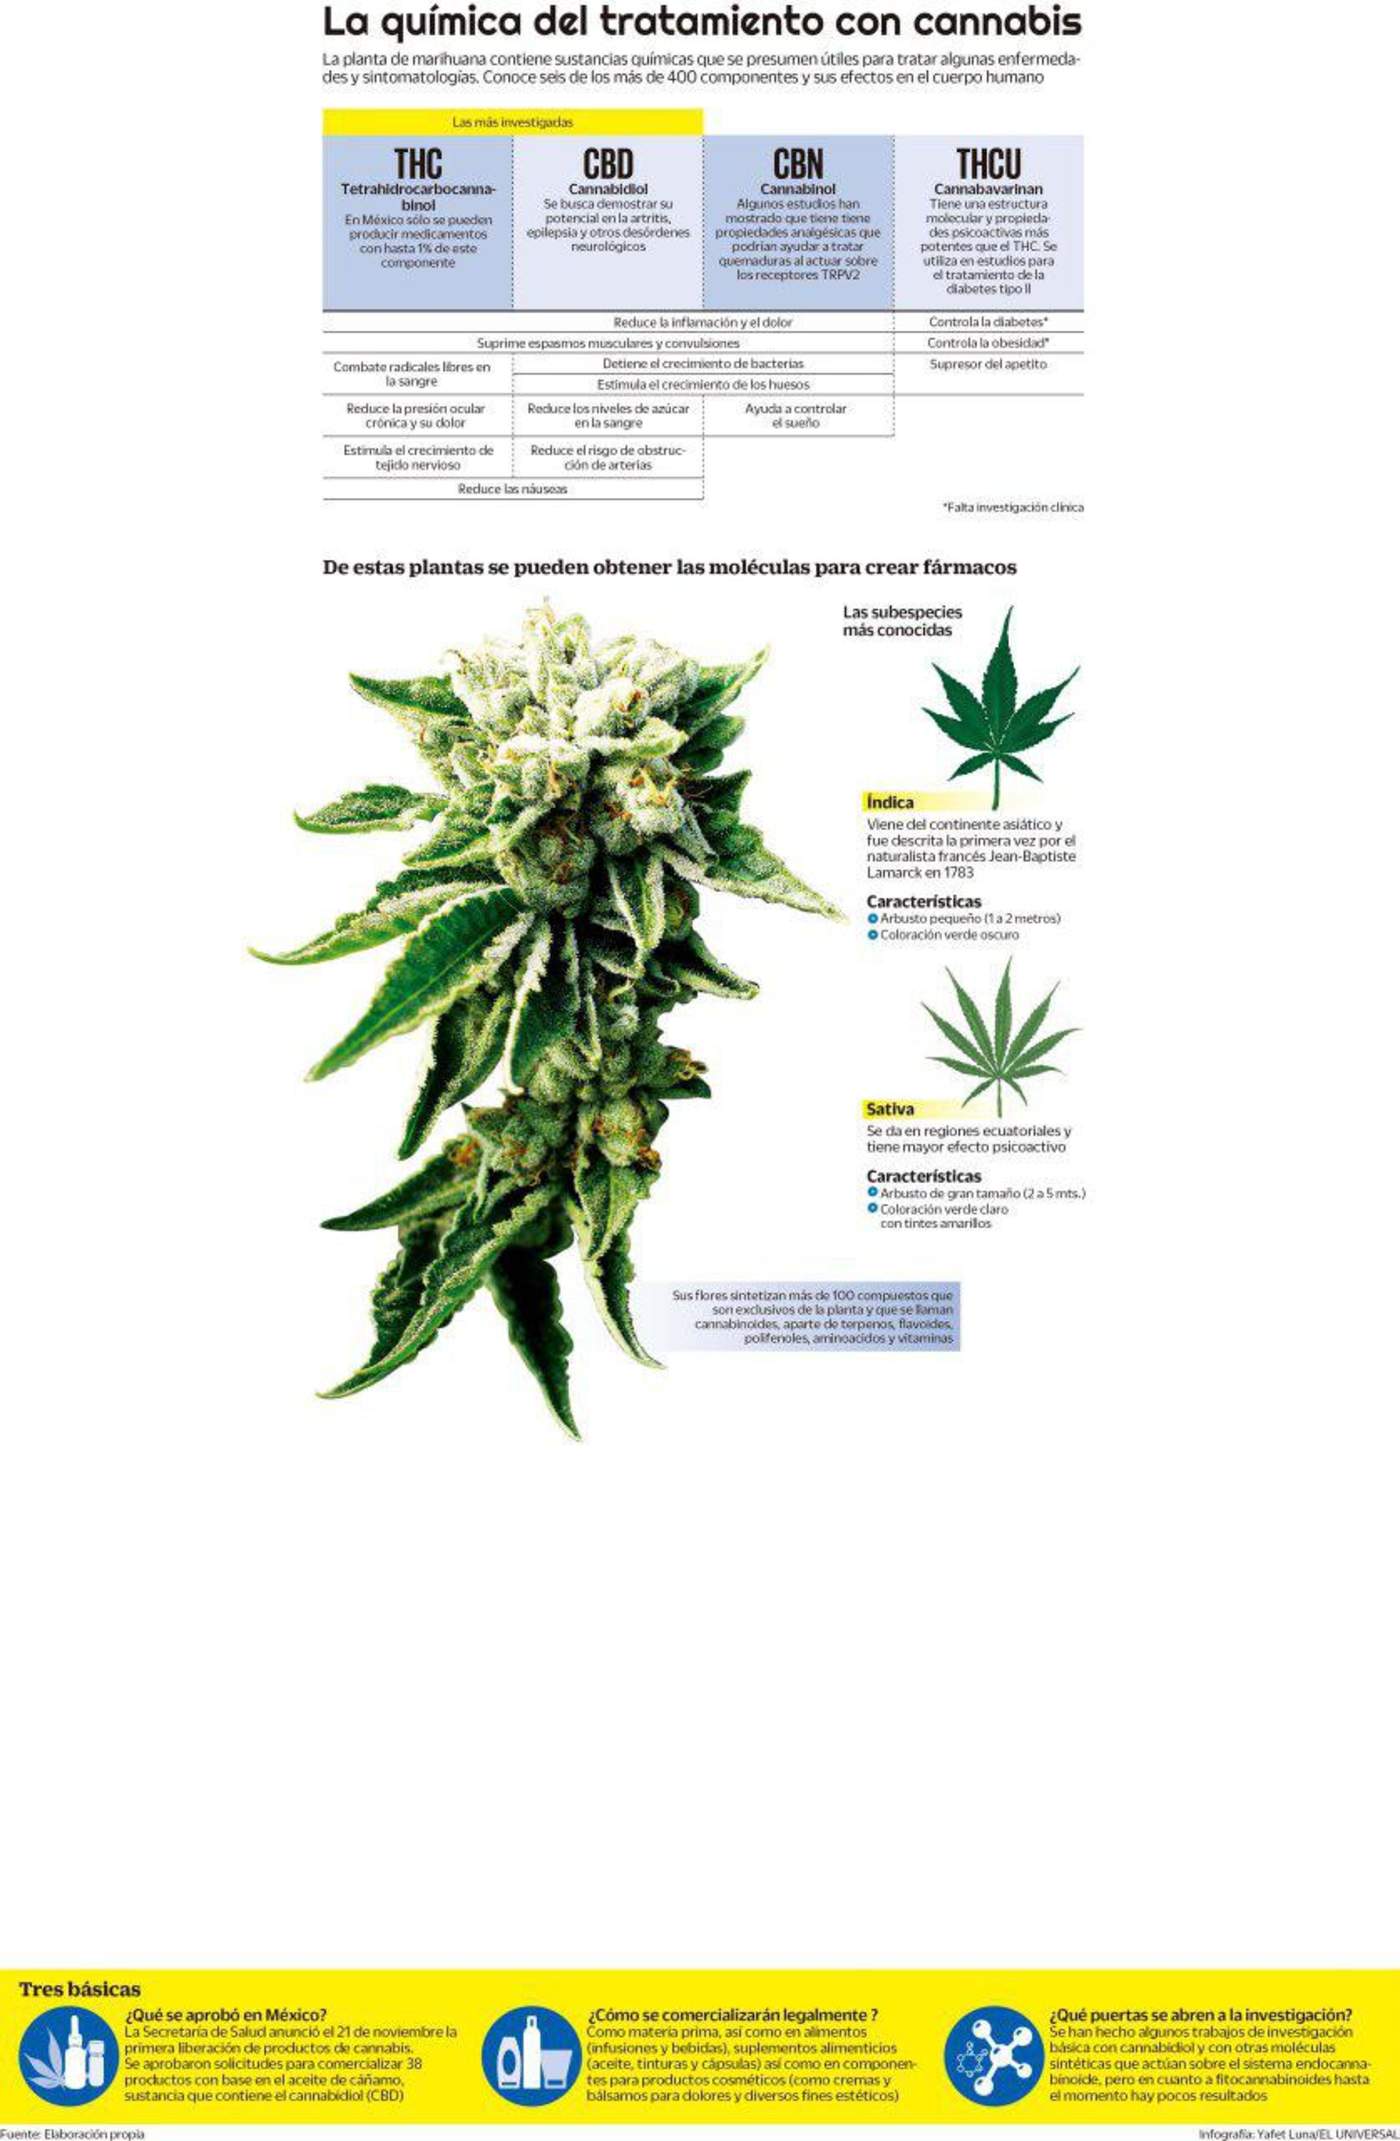 Falta investigación en marihuana medicinal